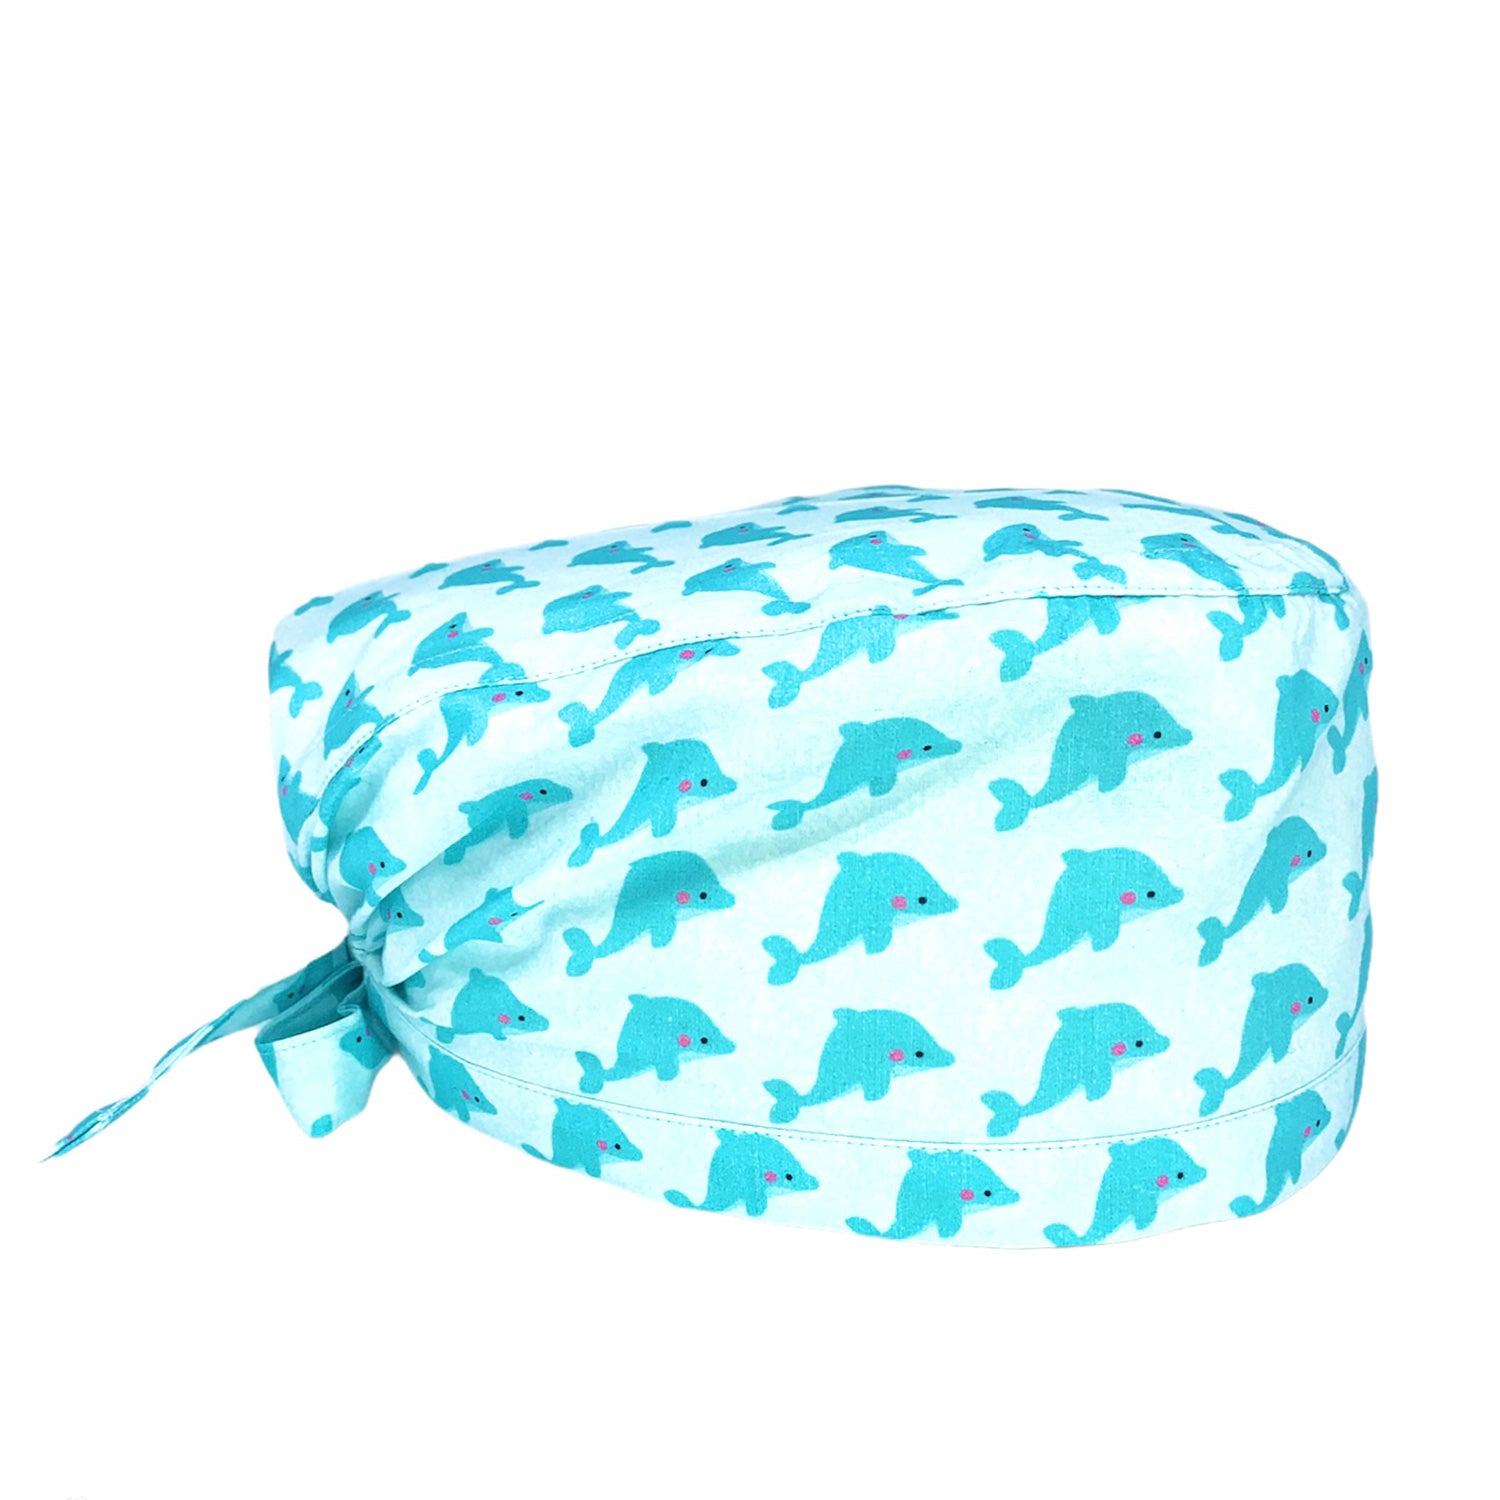 La cuffietta perfetta per gli amanti del mare e dei deliziosi mammiferi che lo popolano con un delicato disegno di delfini su base azzurro chiaro